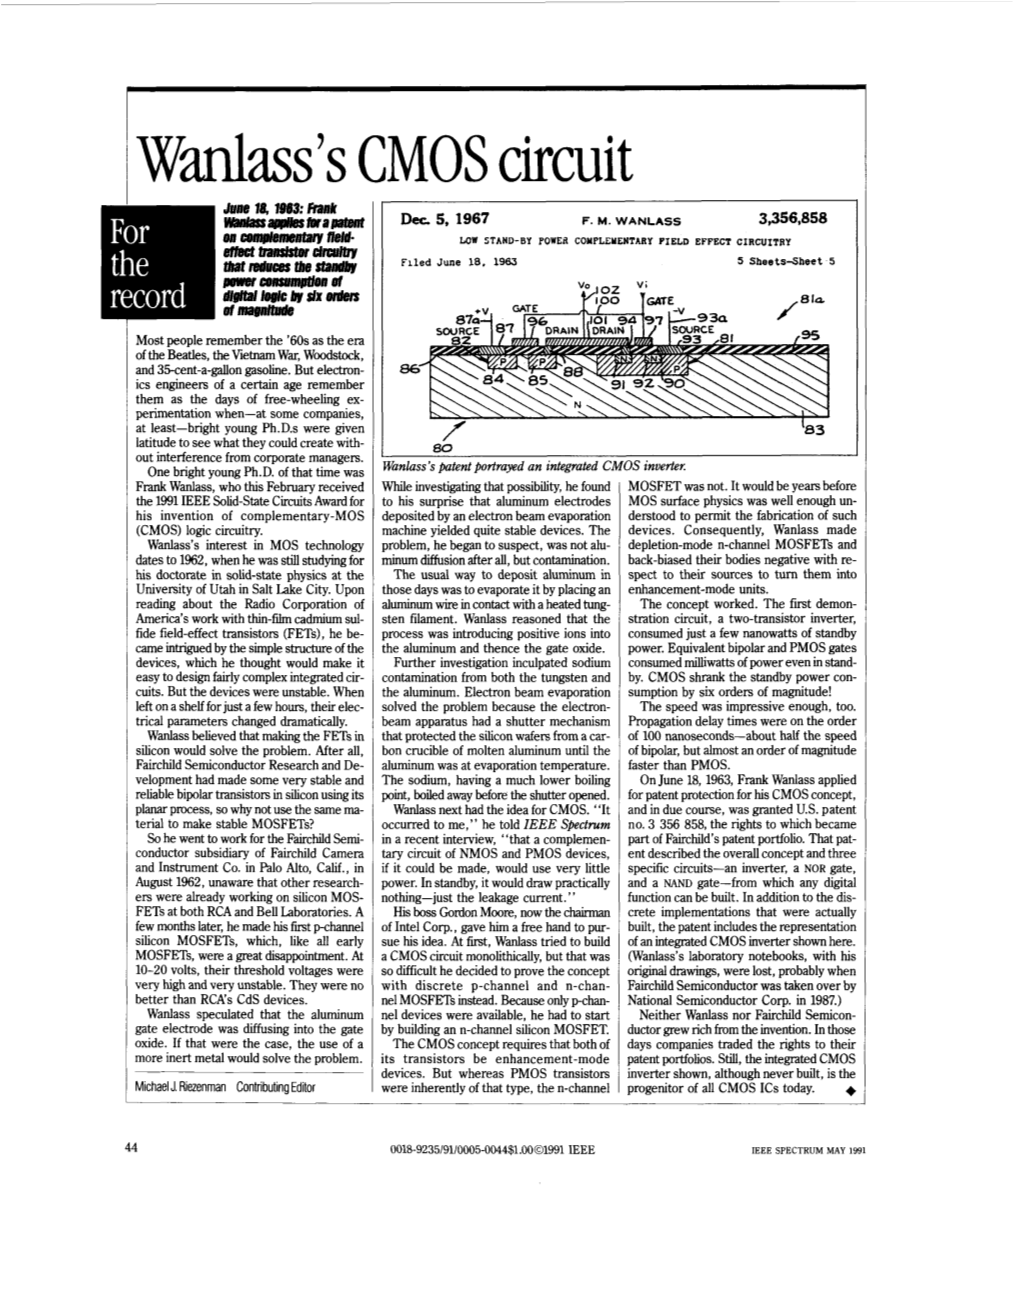 Wanlass's CMOS Circuit